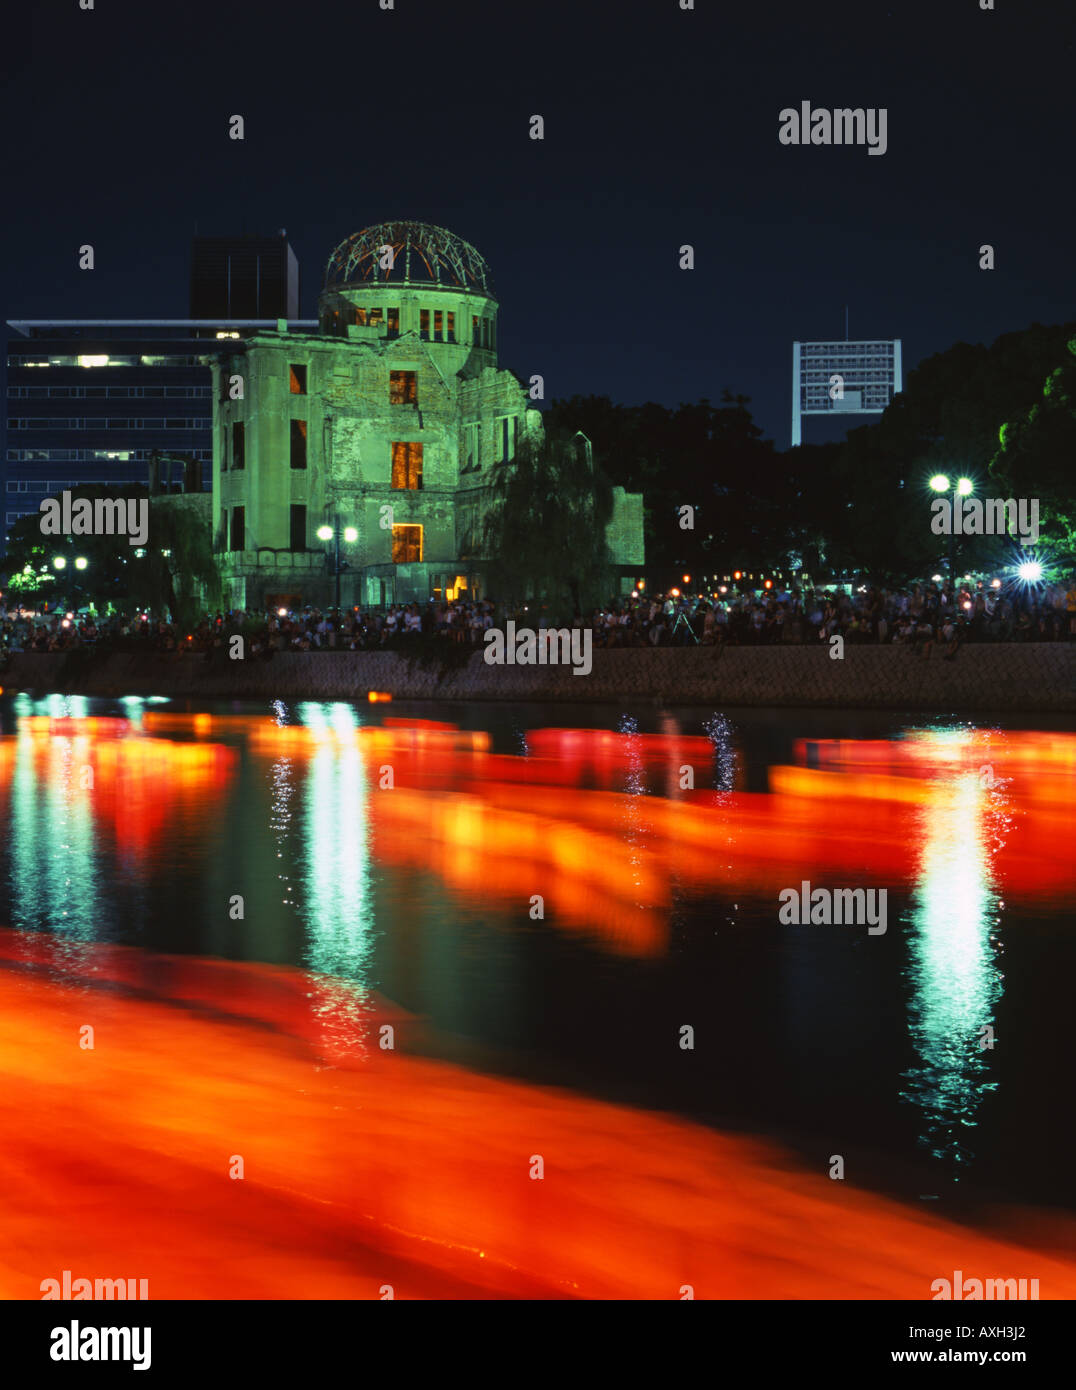 Lanternes flottantes sur août 6th, Hiroshima, Japon. Placé dans la rivière à côté du Dôme de la Bombe Atomique ( site du patrimoine mondial de l'UNESCO. ) Banque D'Images